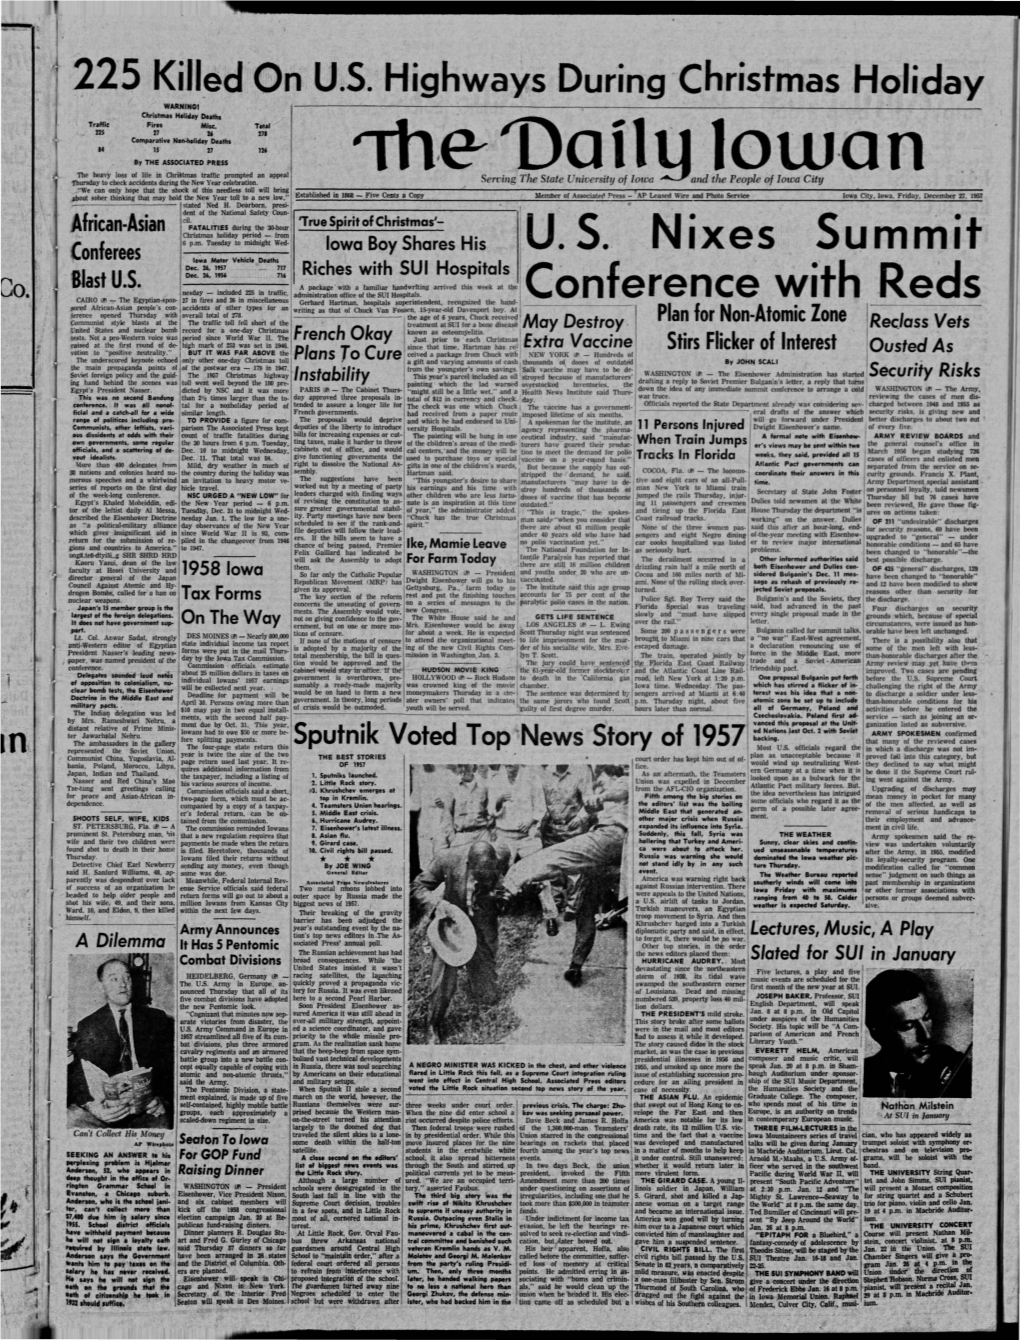 Daily Iowan (Iowa City, Iowa), 1957-12-27